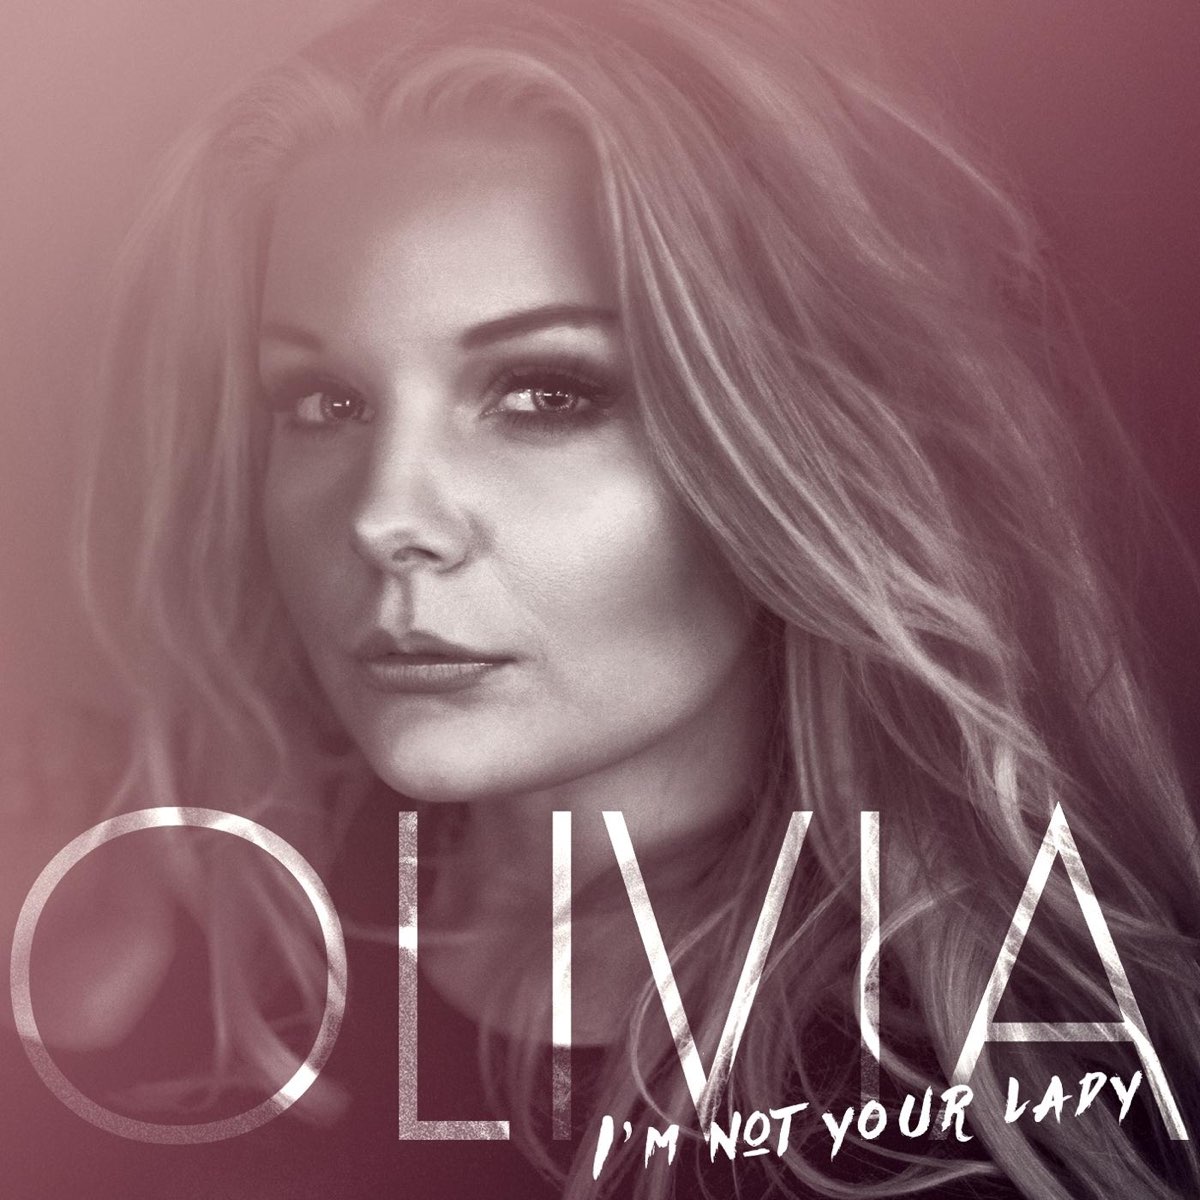 ‎I'm Not Your Lady - Single – Album av Olivia – Apple Music